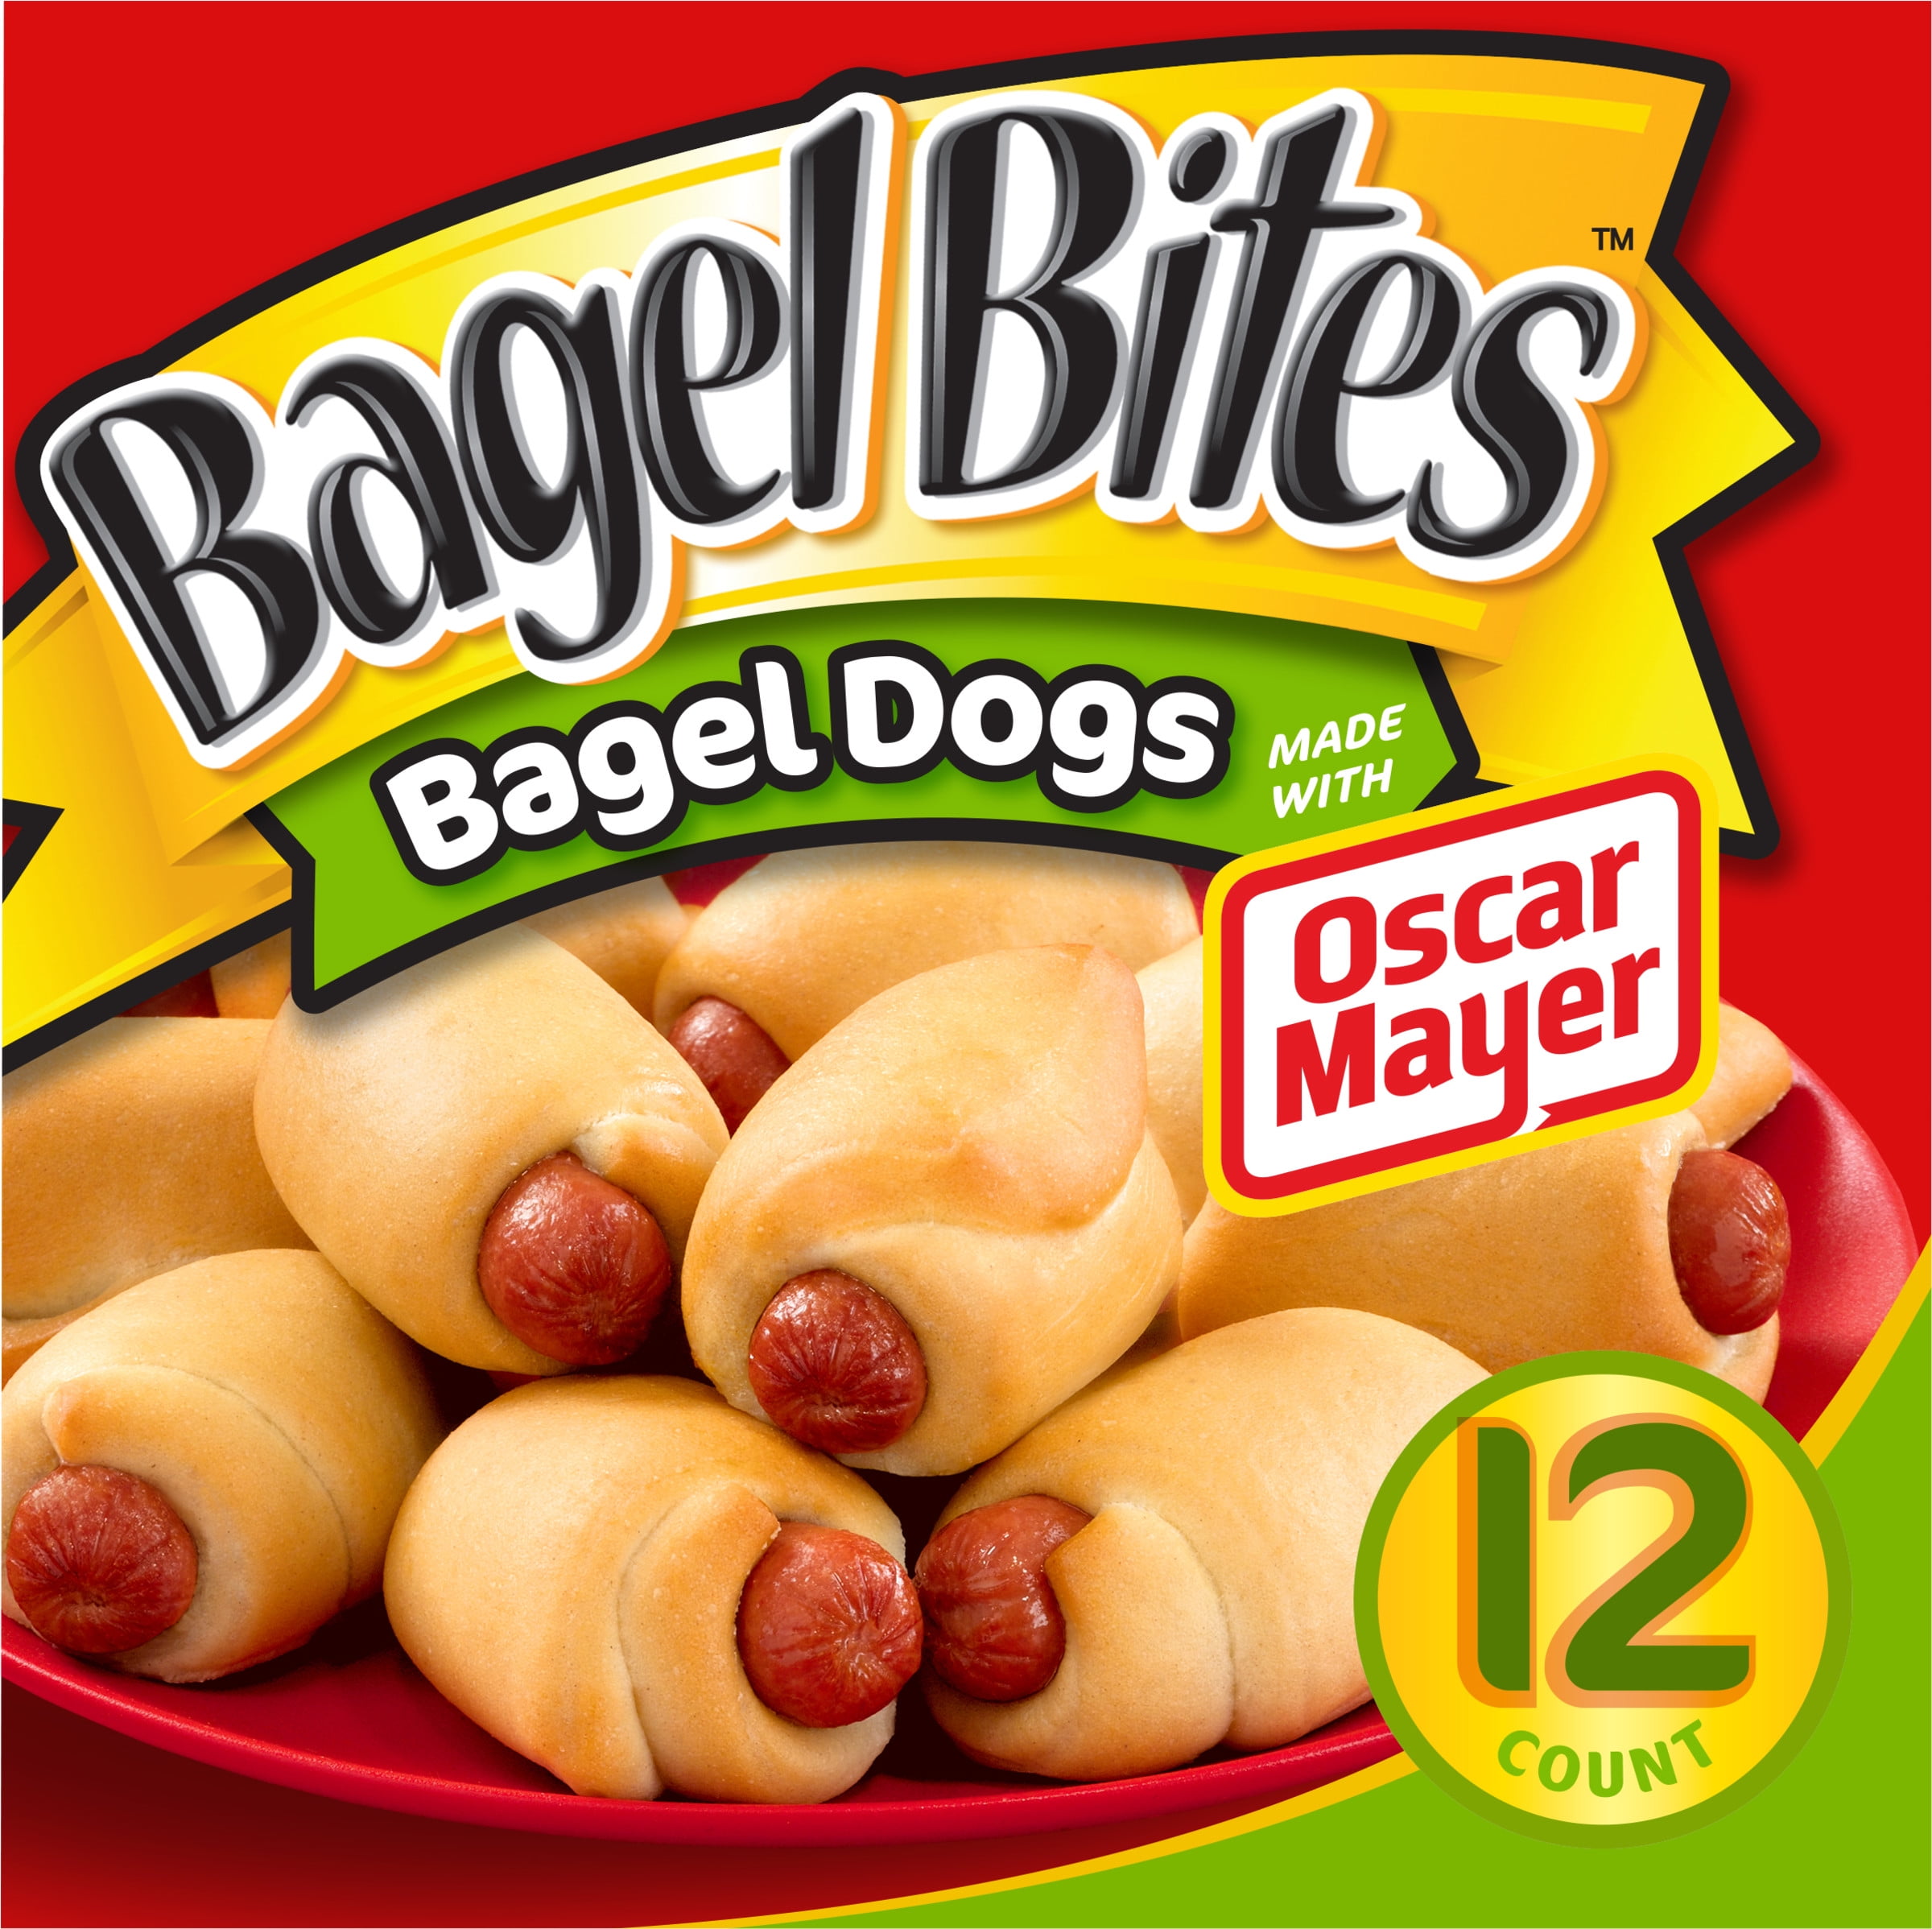 Bagel Bites Bagel Dogs Frozen Snacks, 12 Ct Box